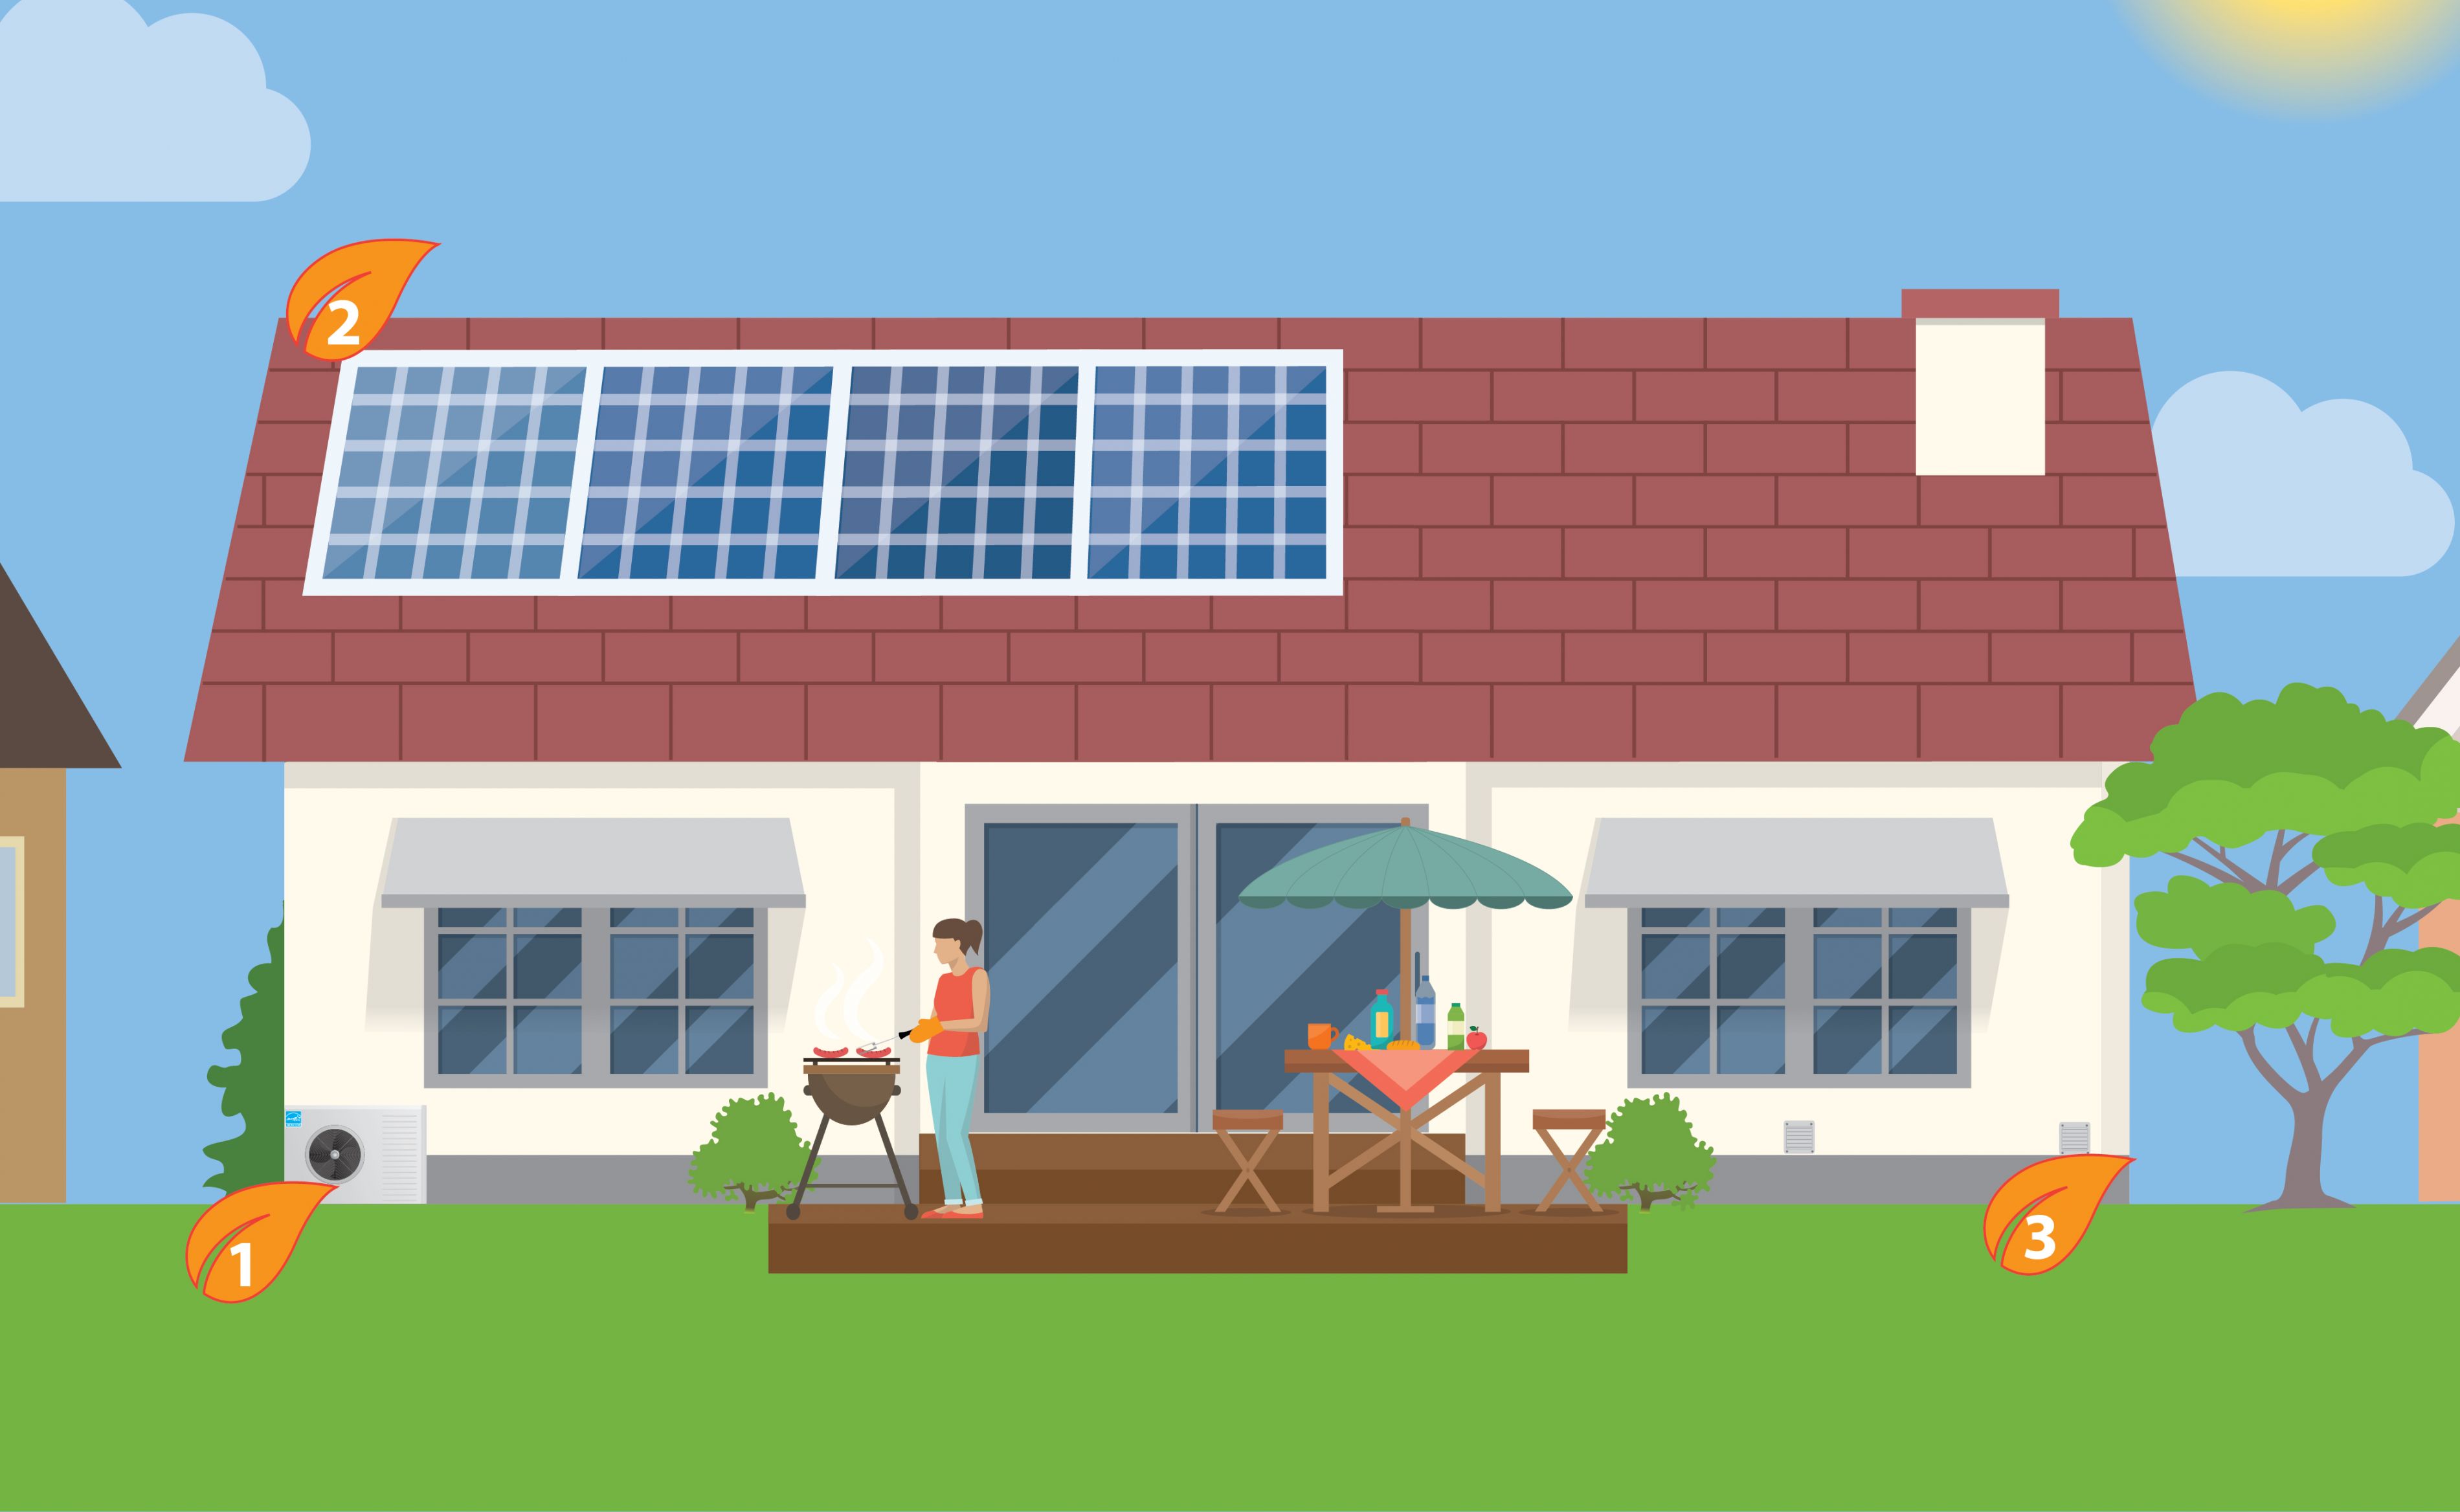 L’extérieur d’une maison, un jour d’été, il y a trois chiffres identifiant différentes zones de la cour arrière. 1) Une thermopompe à air 2) Des panneaux solaires 3) Le grillage d’un ventilateur-récupérateur ou d’énergie